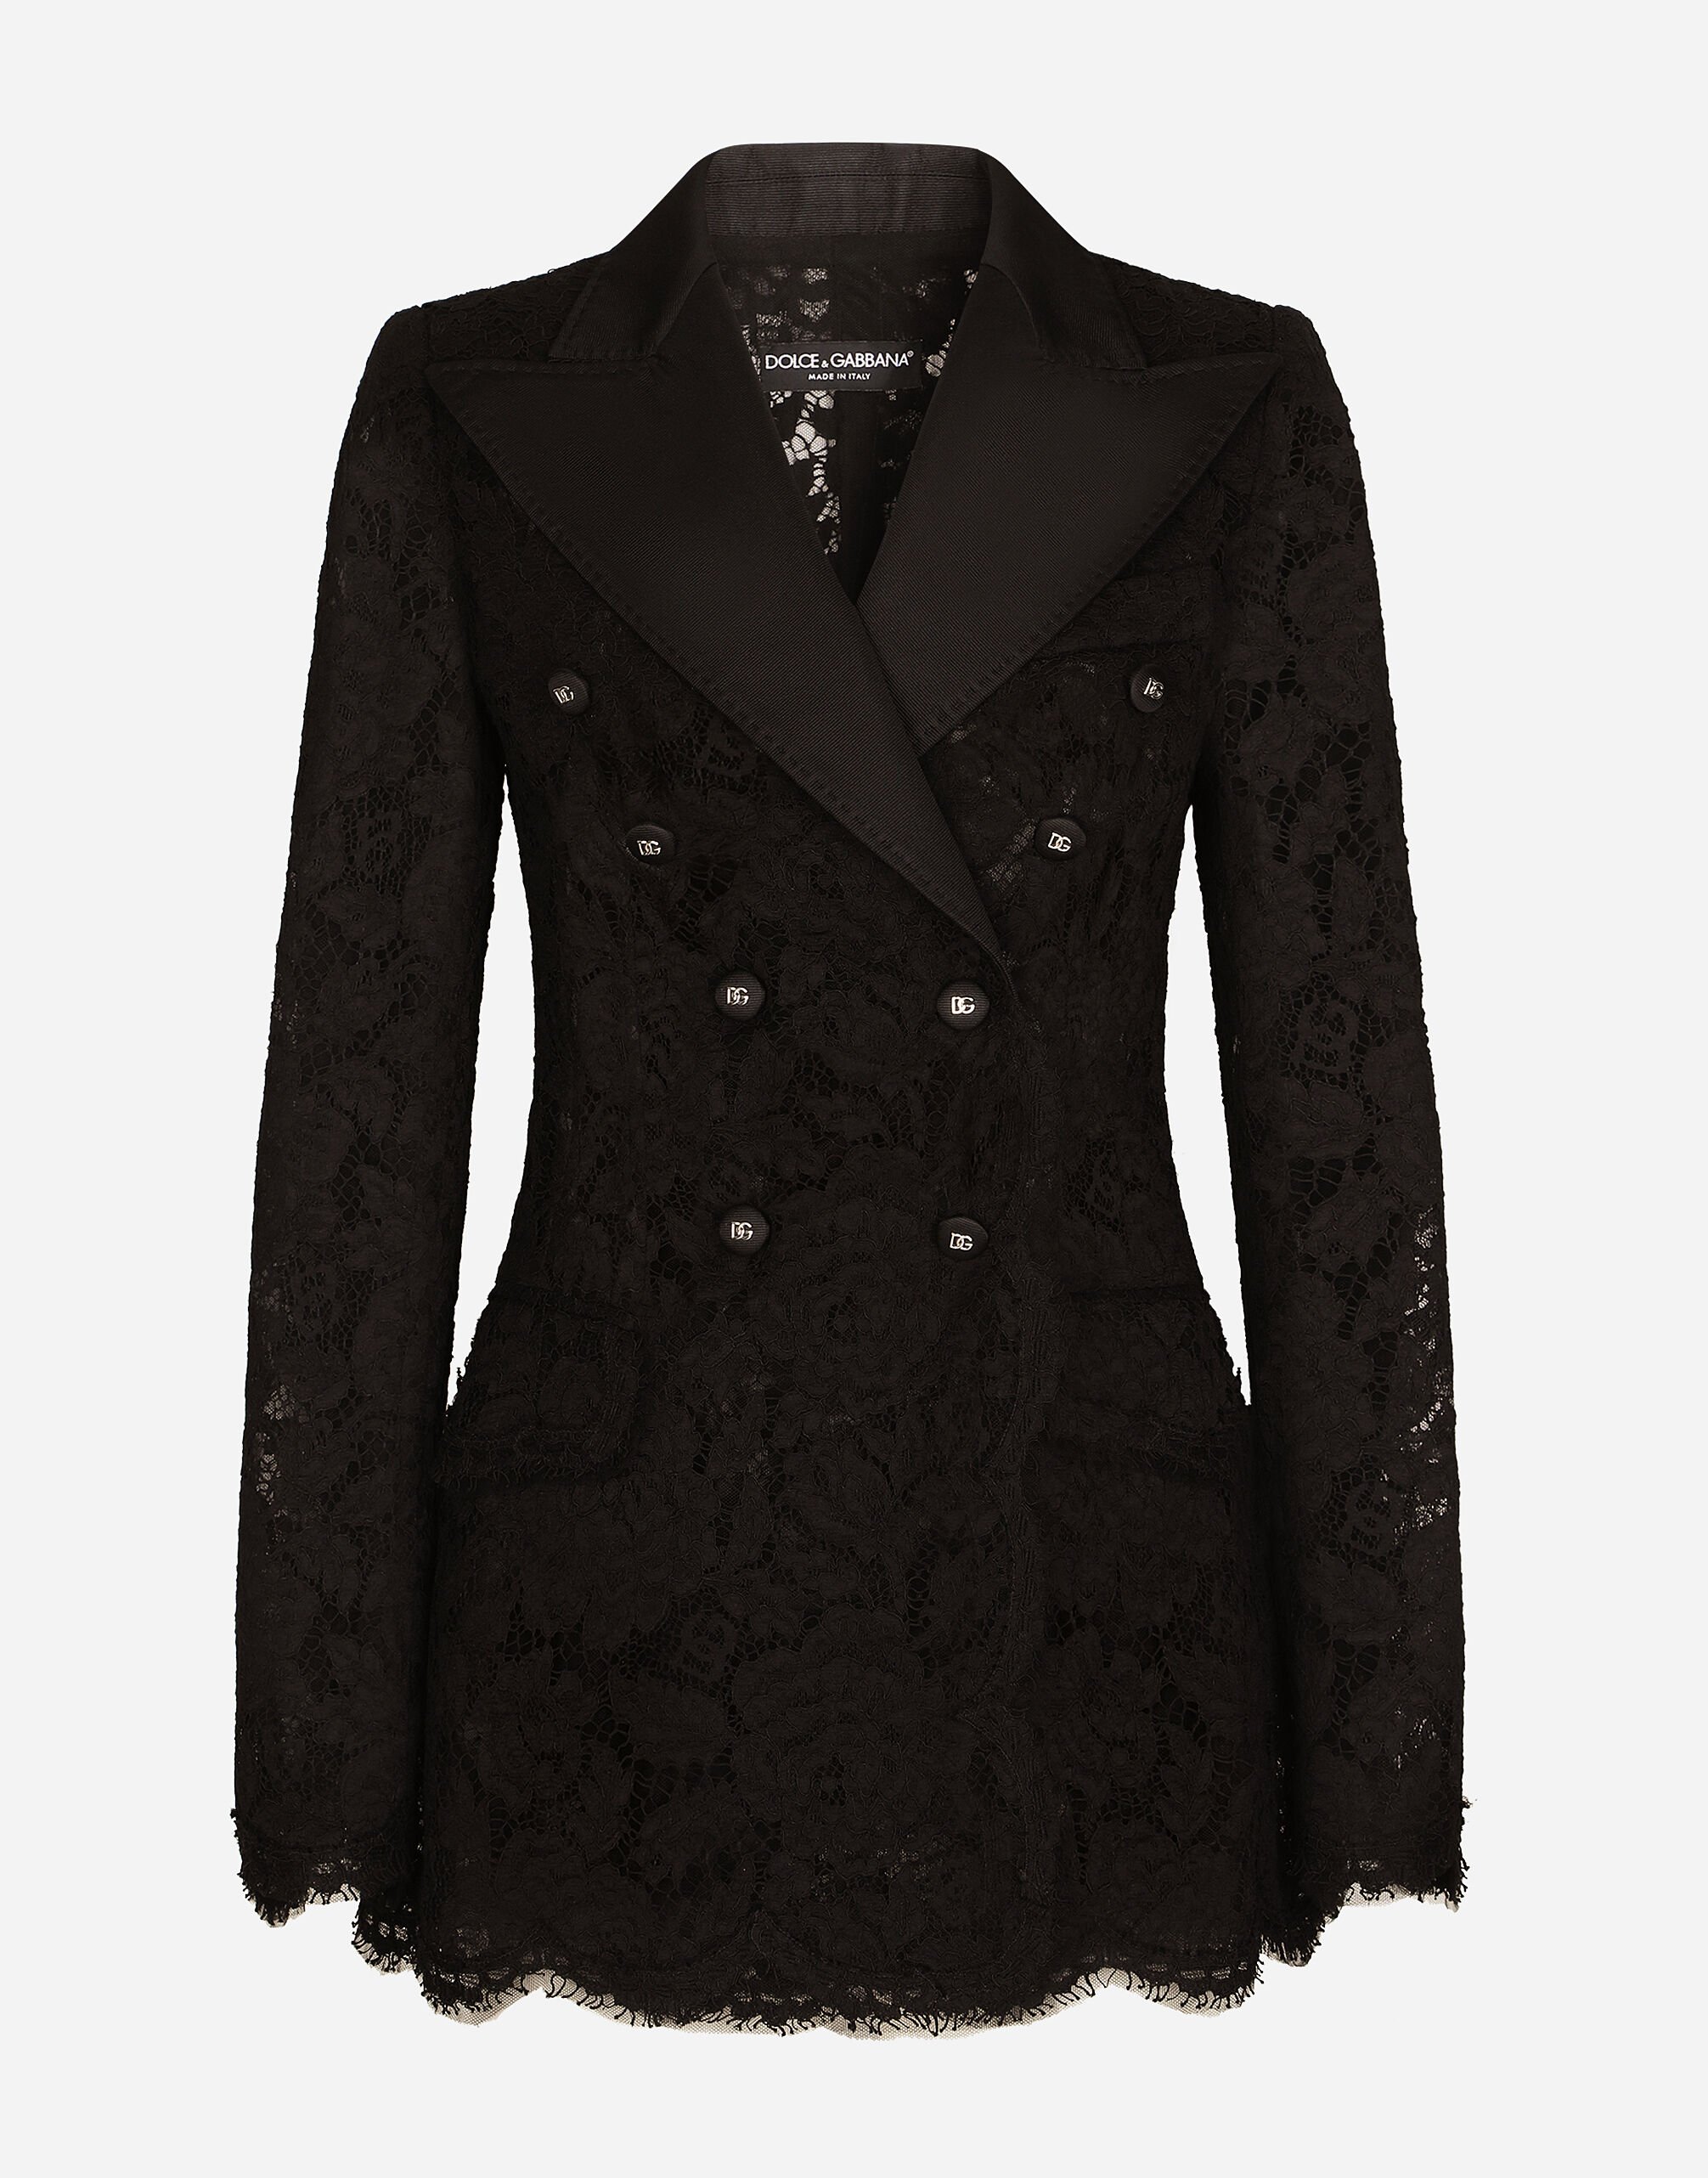 Dolce & Gabbana Branded stretch lace Turlington blazer Black VG6186VN187